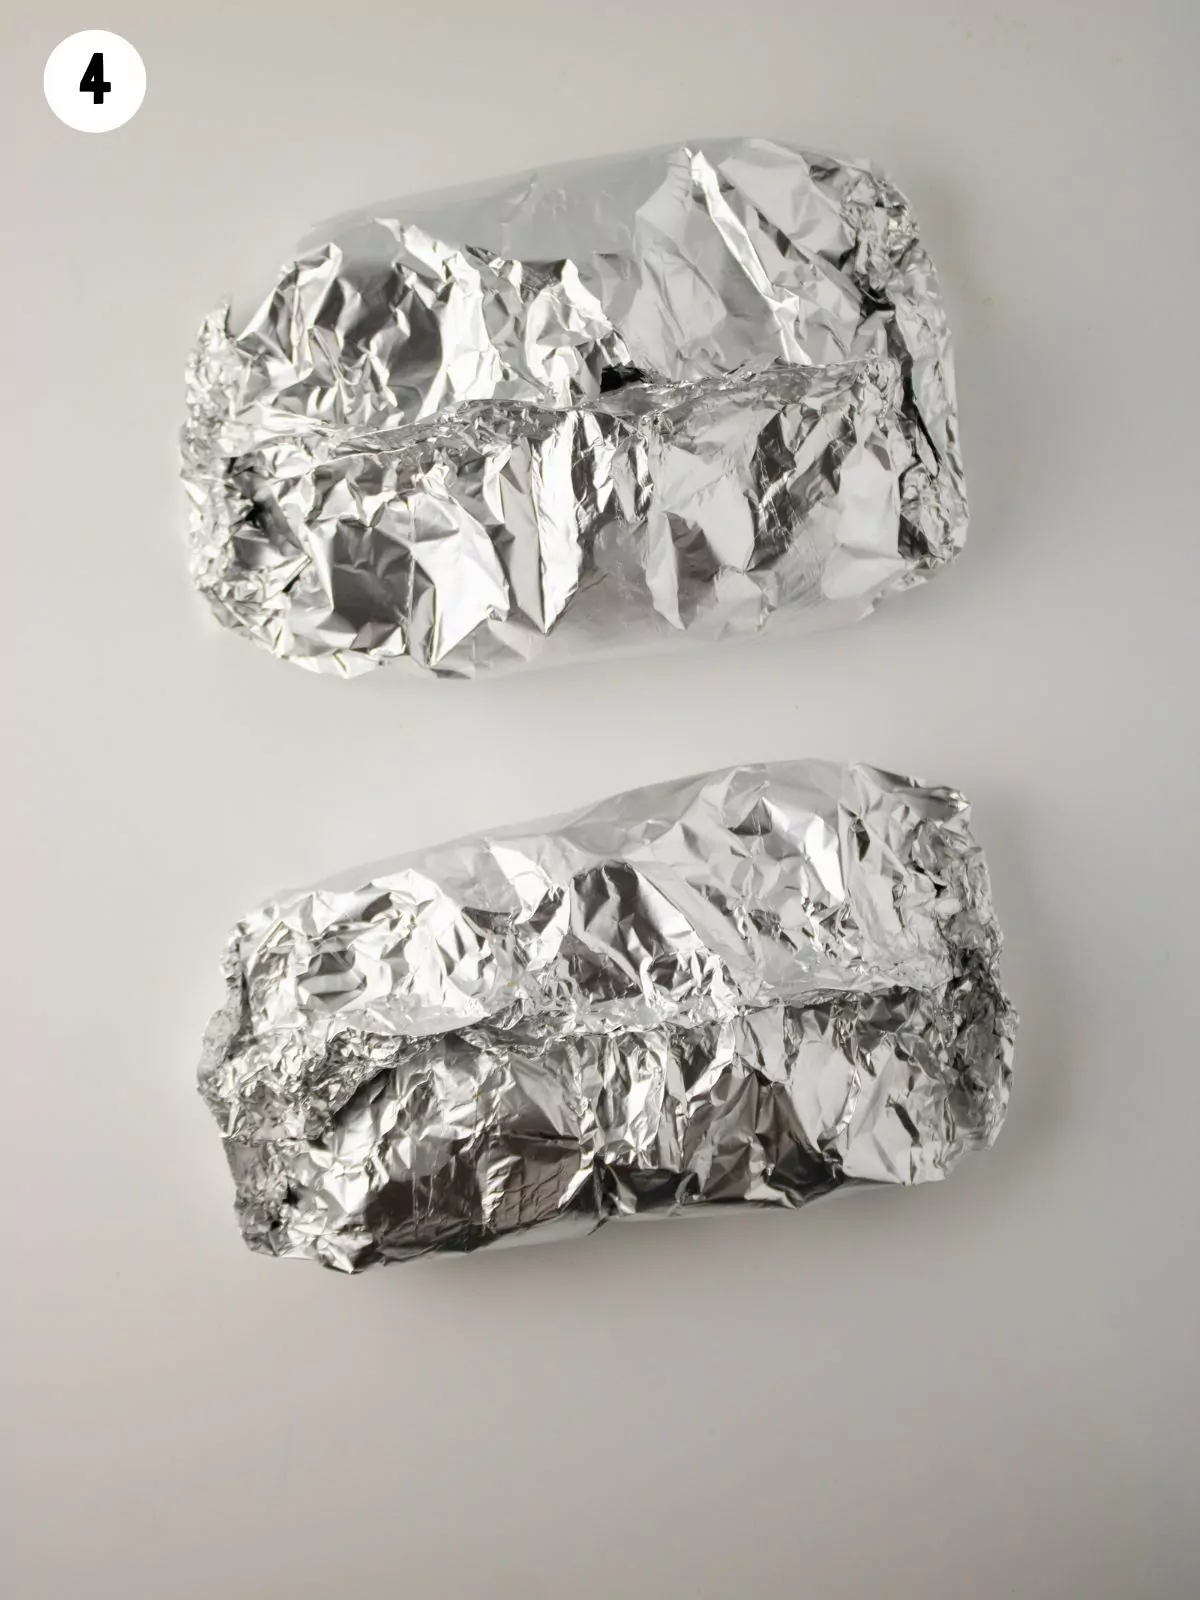 aluminum foil bundles.